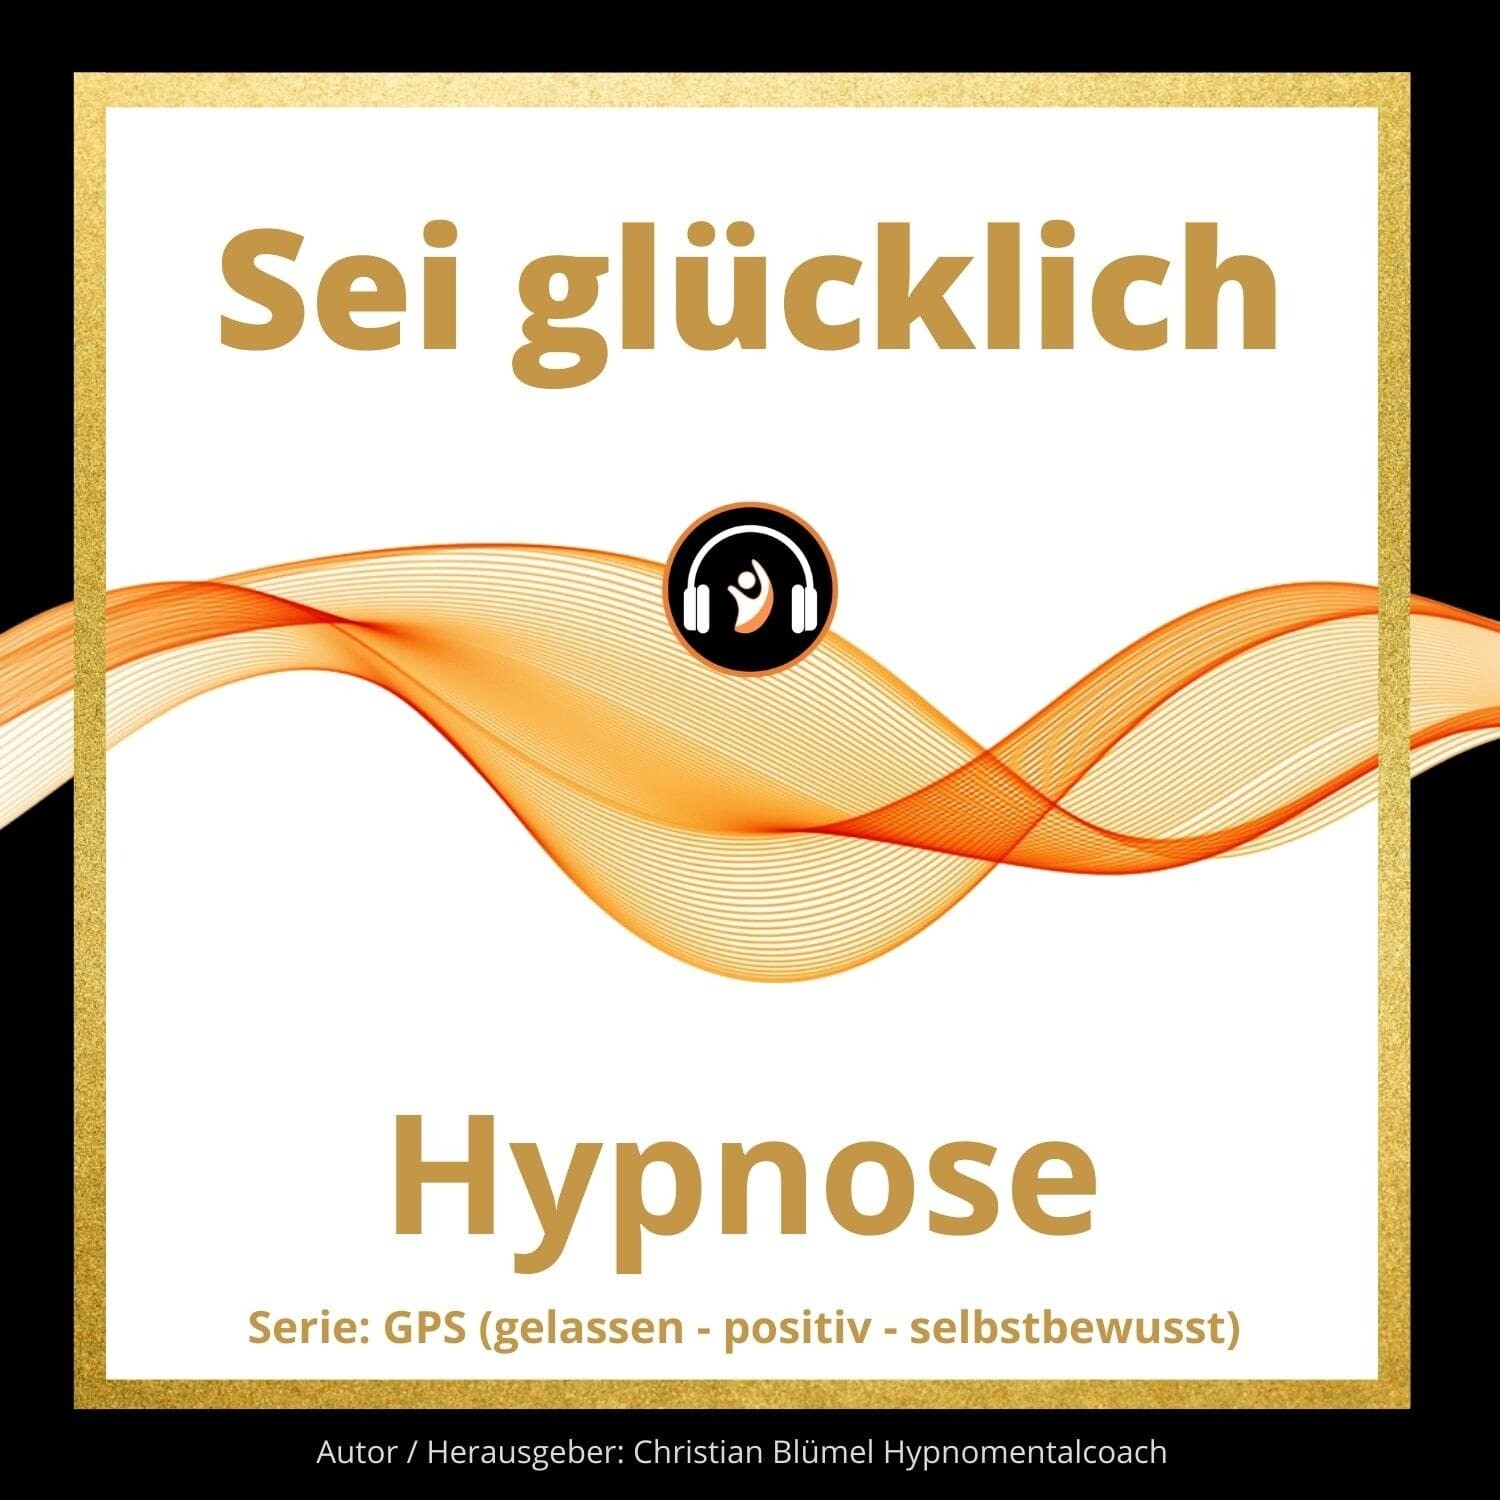 Audio Hypnose: Sei glücklich
GPS – gelassen-positiv-selbstbewusst